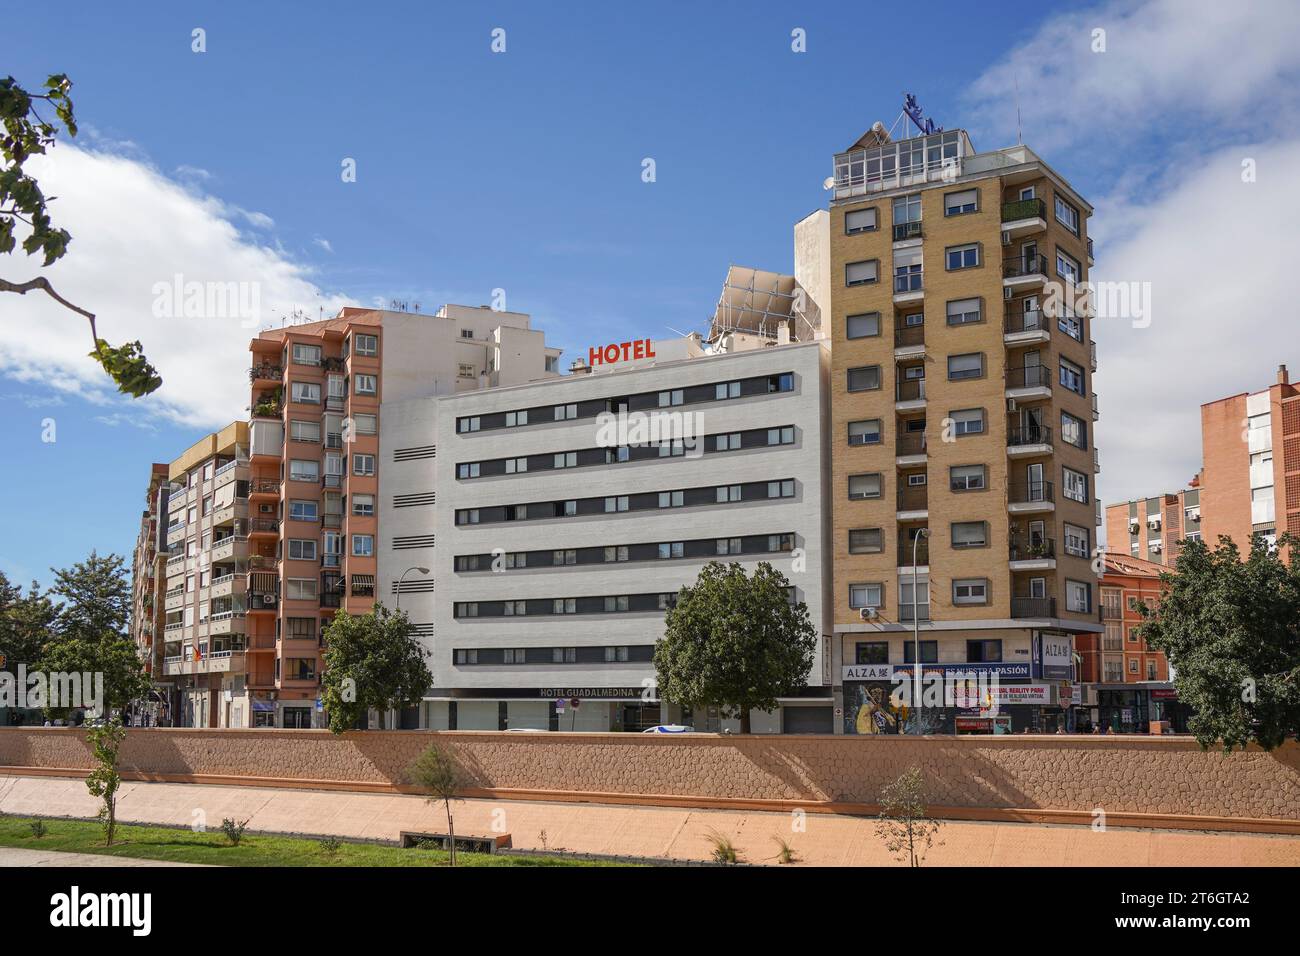 Hôtel entre deux immeubles résidentiels, Malaga, Andalousie. Espagne. Banque D'Images